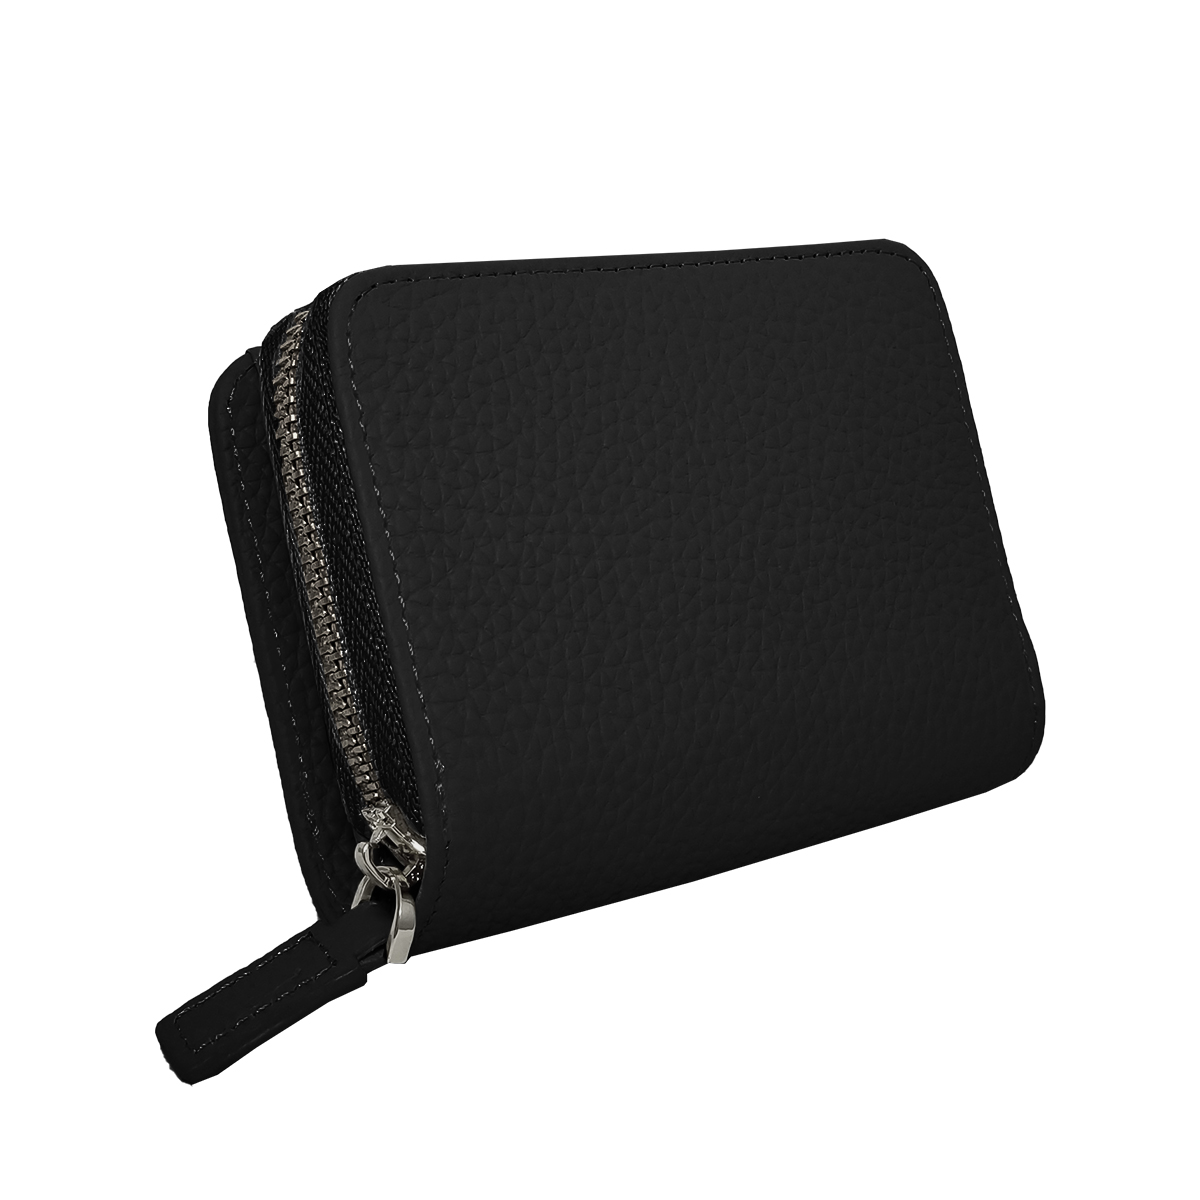 ミニ財布 レディース 二つ折り 使いやすい 本革 小さめ 磁気防止 スキミング防止 ブランド 大容量...